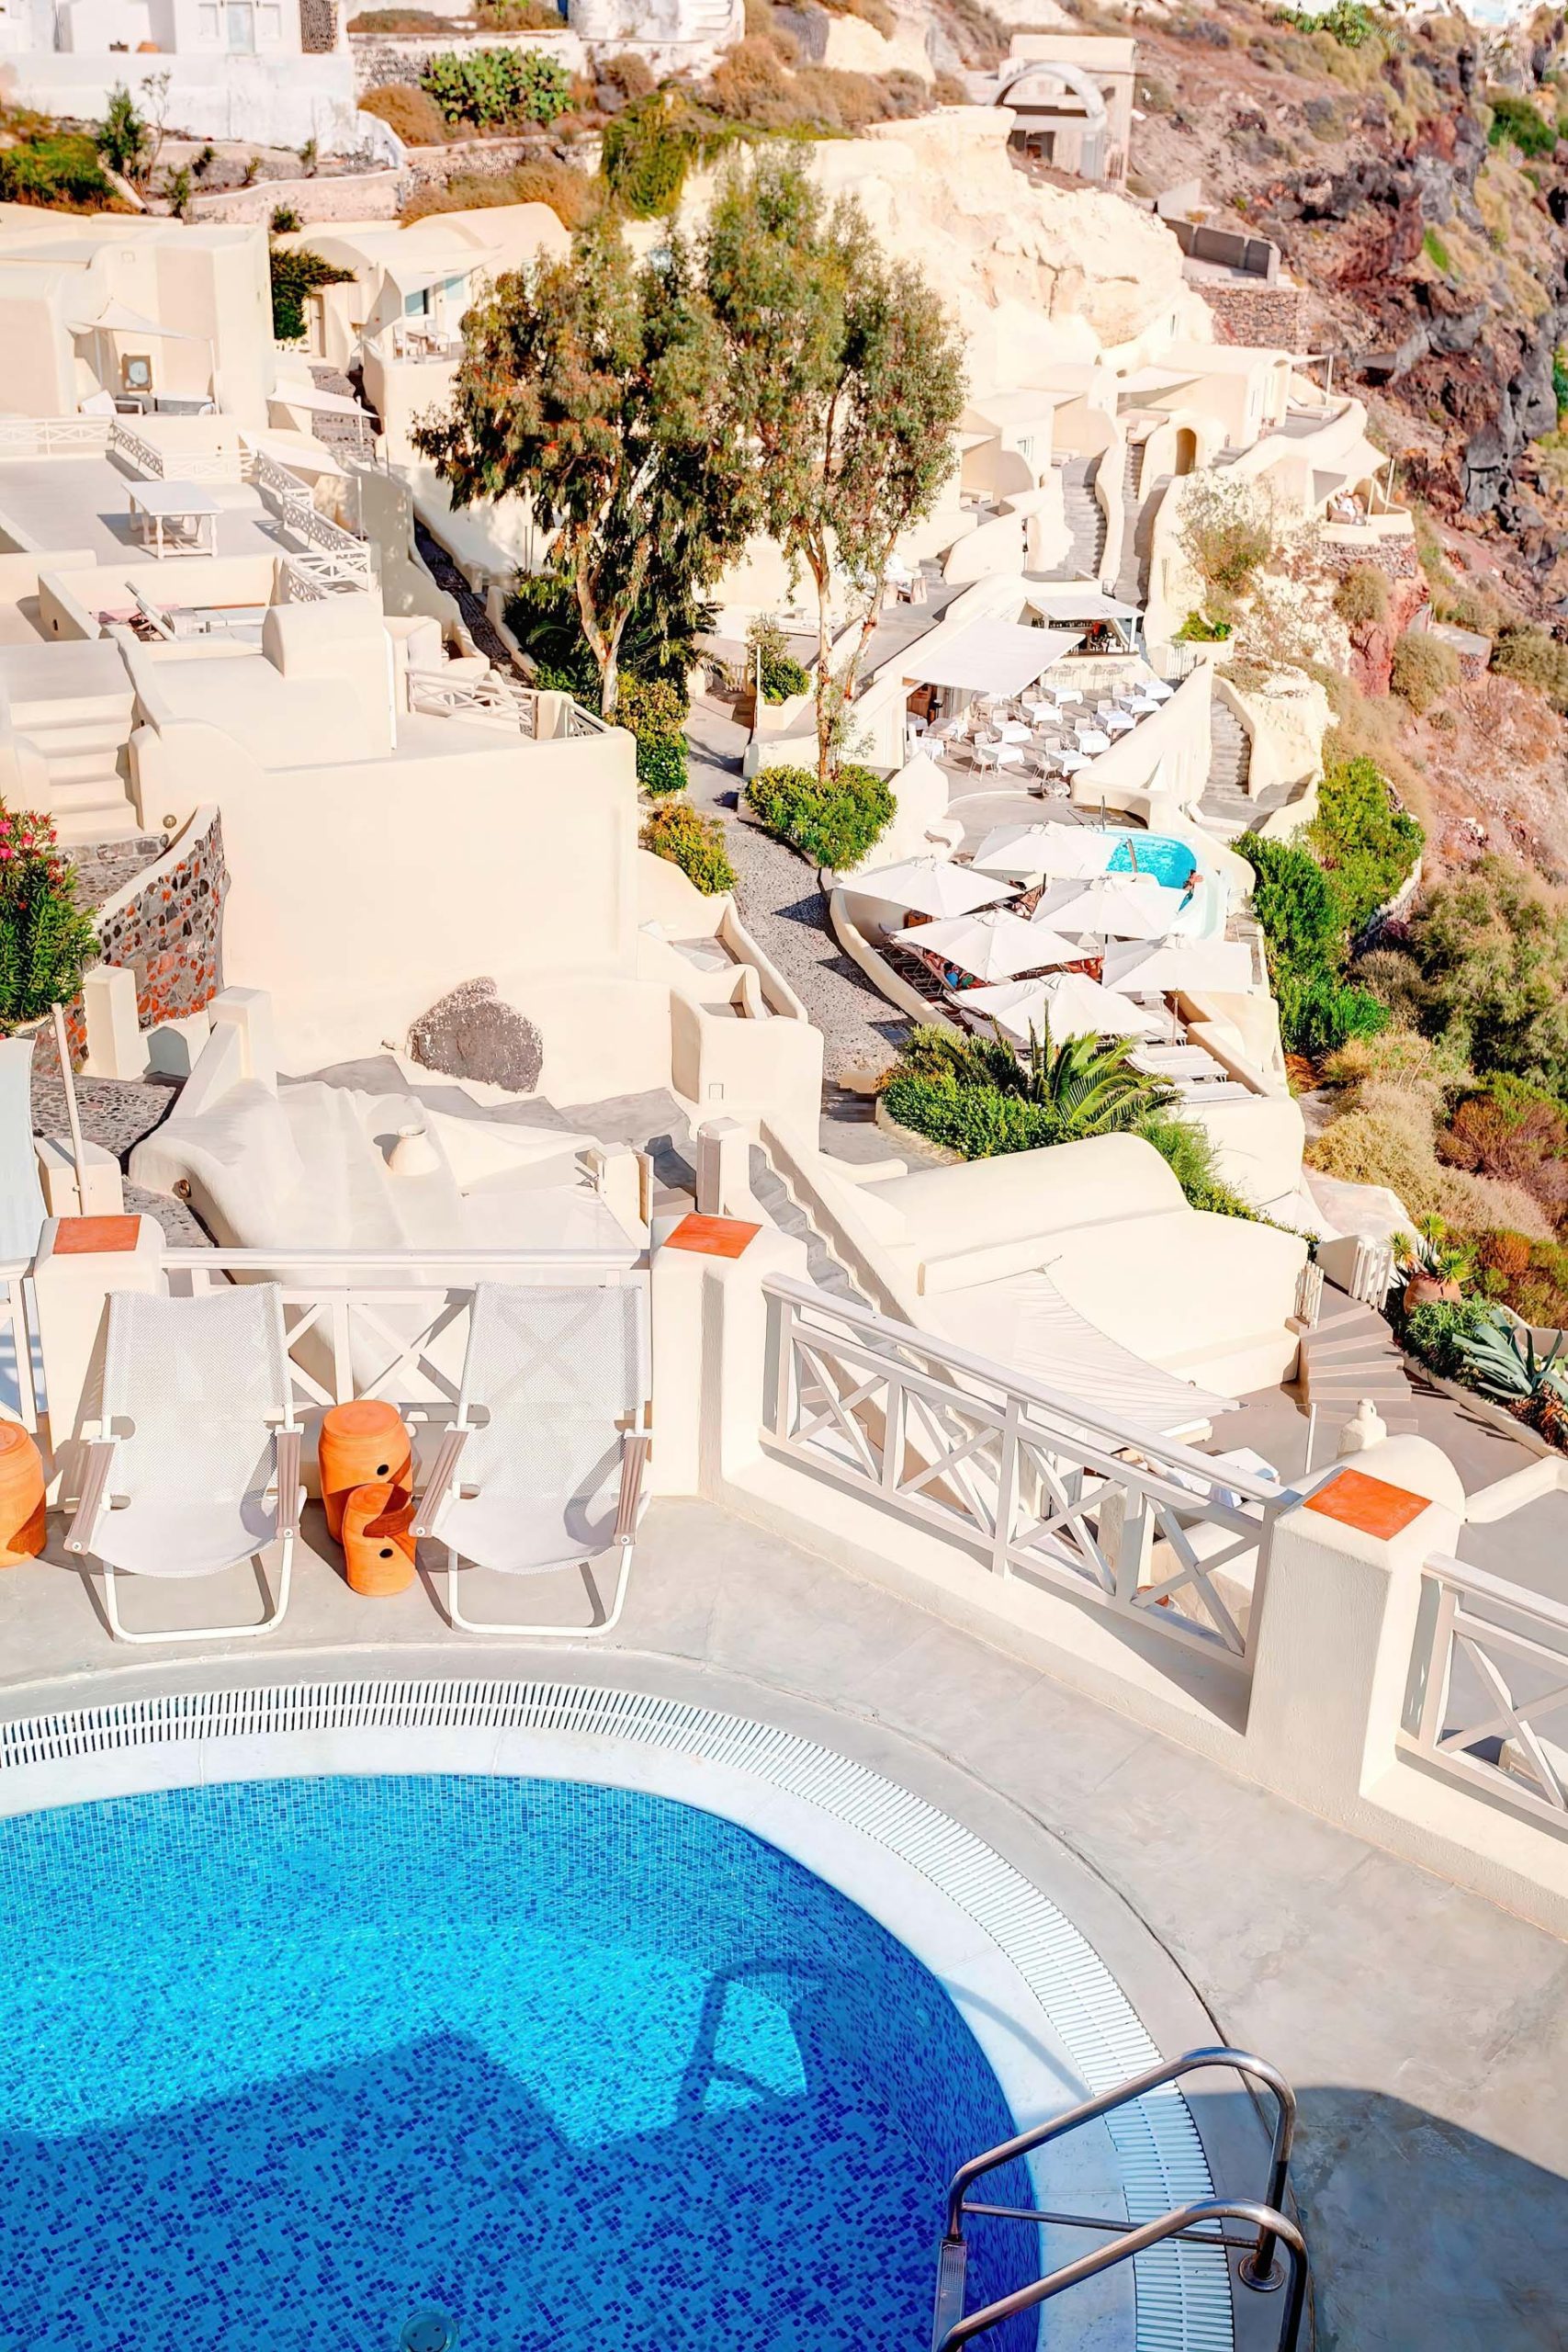 Mystique Hotel Santorini – Oia, Santorini Island, Greece - Captain's Lounge Pool